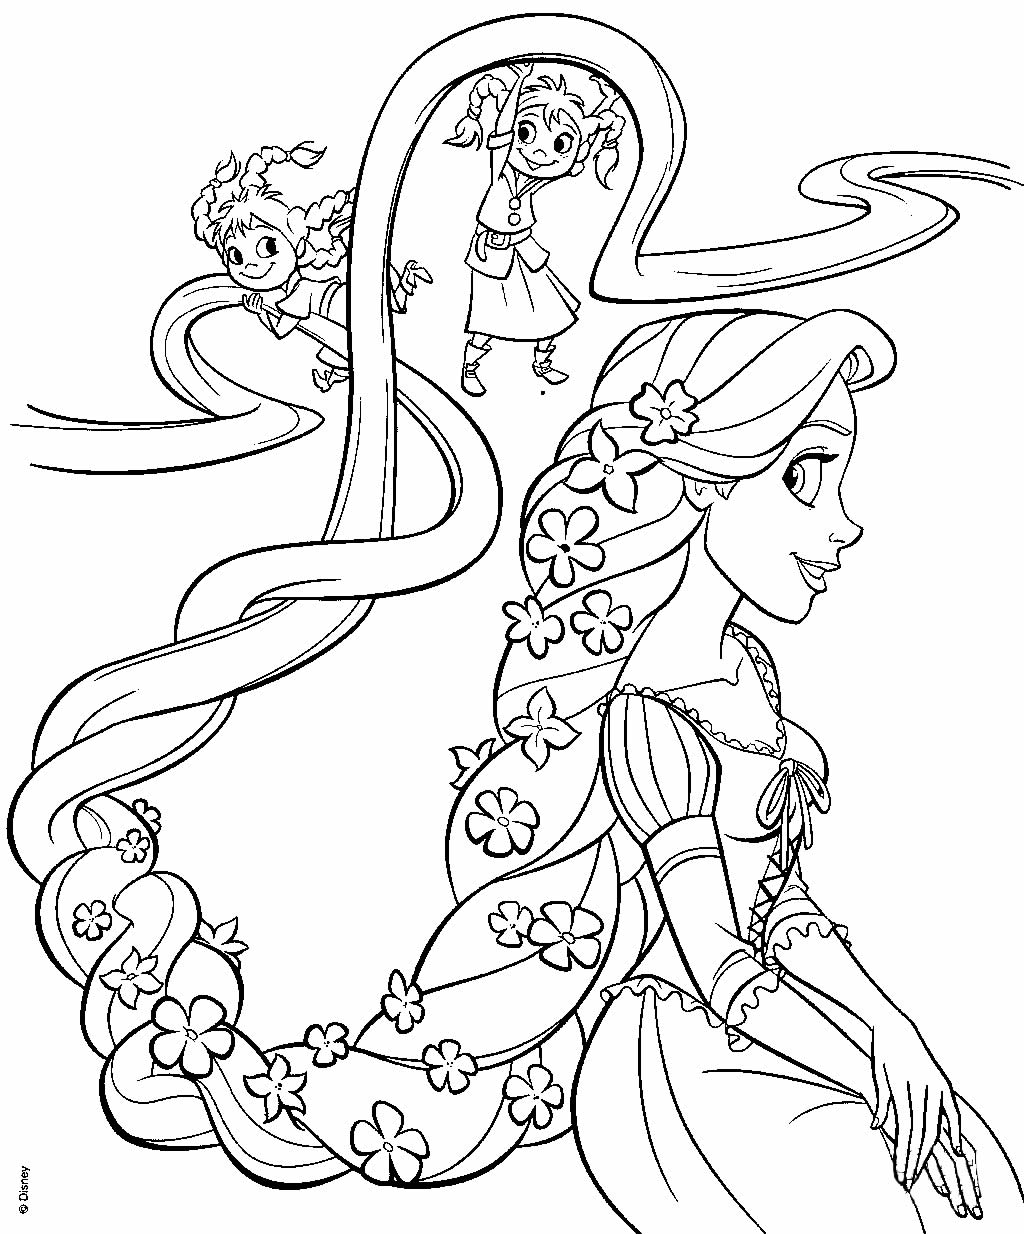 Lindos desenhos para colorir da Rapunzel